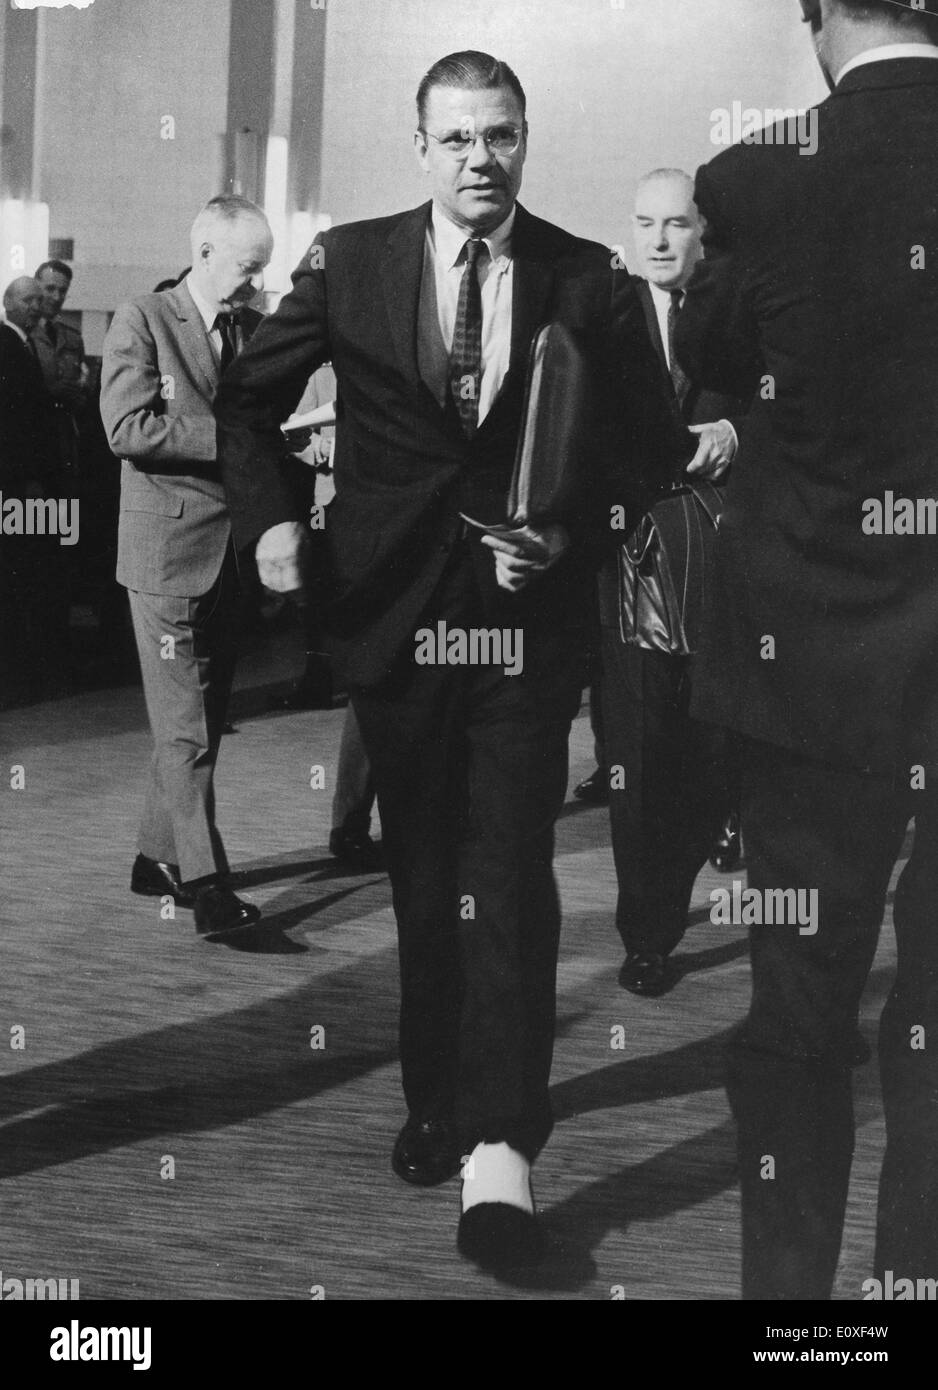 ROBERT MCNAMARA, gli Stati Uniti il Segretario della Difesa, passeggiate con la sua gamba intonacata alla sede centrale, dopo il suo incidente. Foto Stock